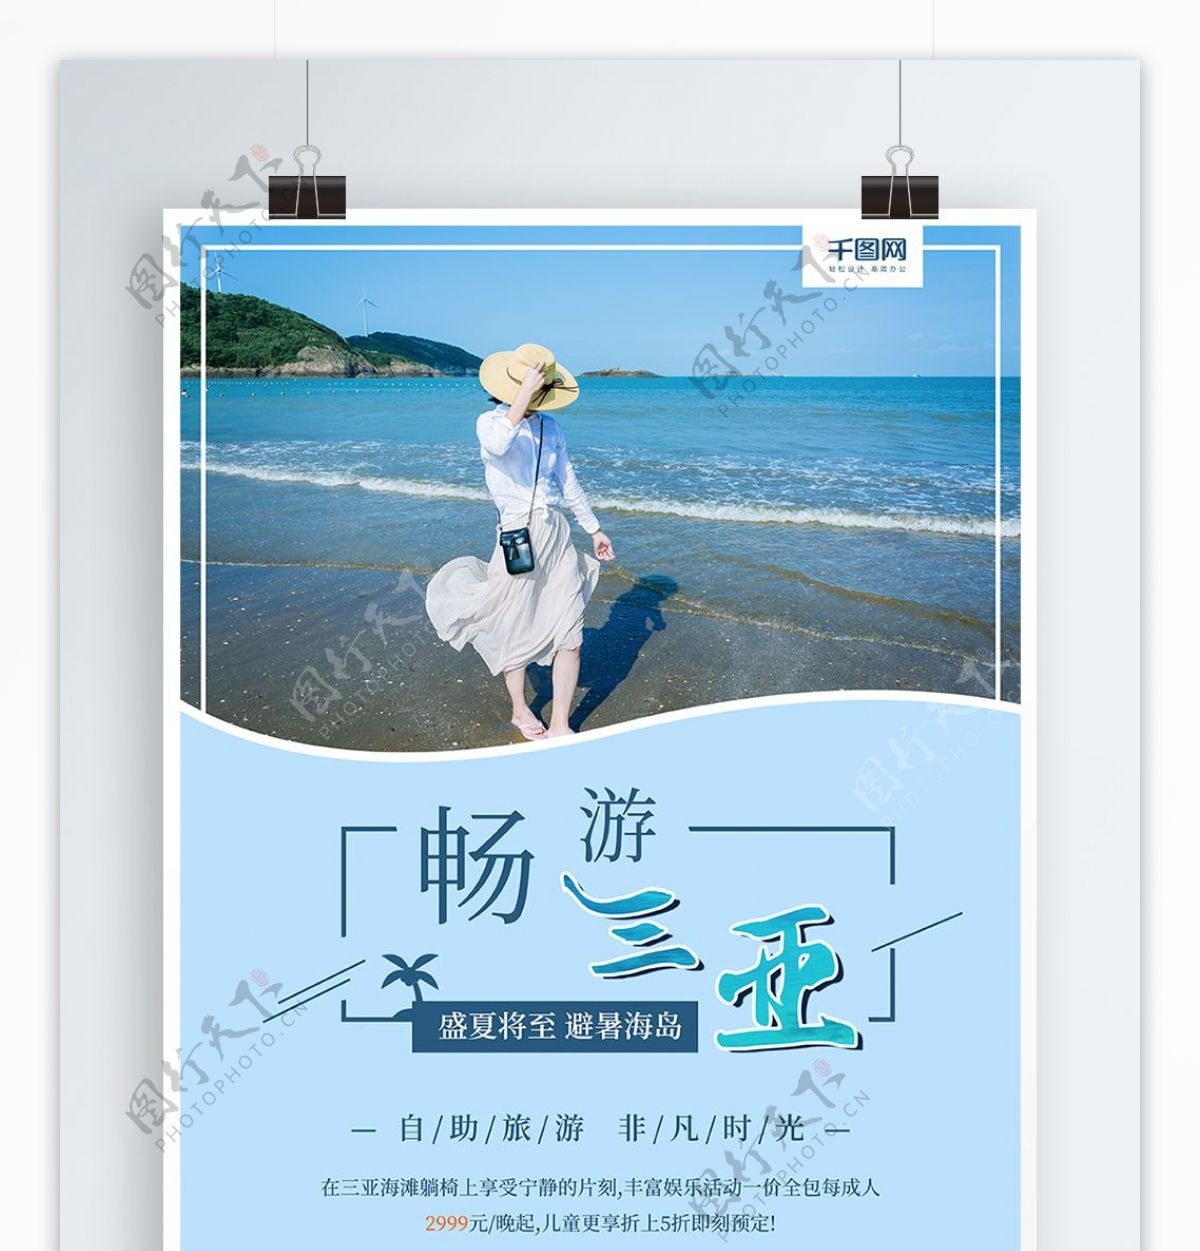 海南三亚度假旅游旅行社促销宣传海报